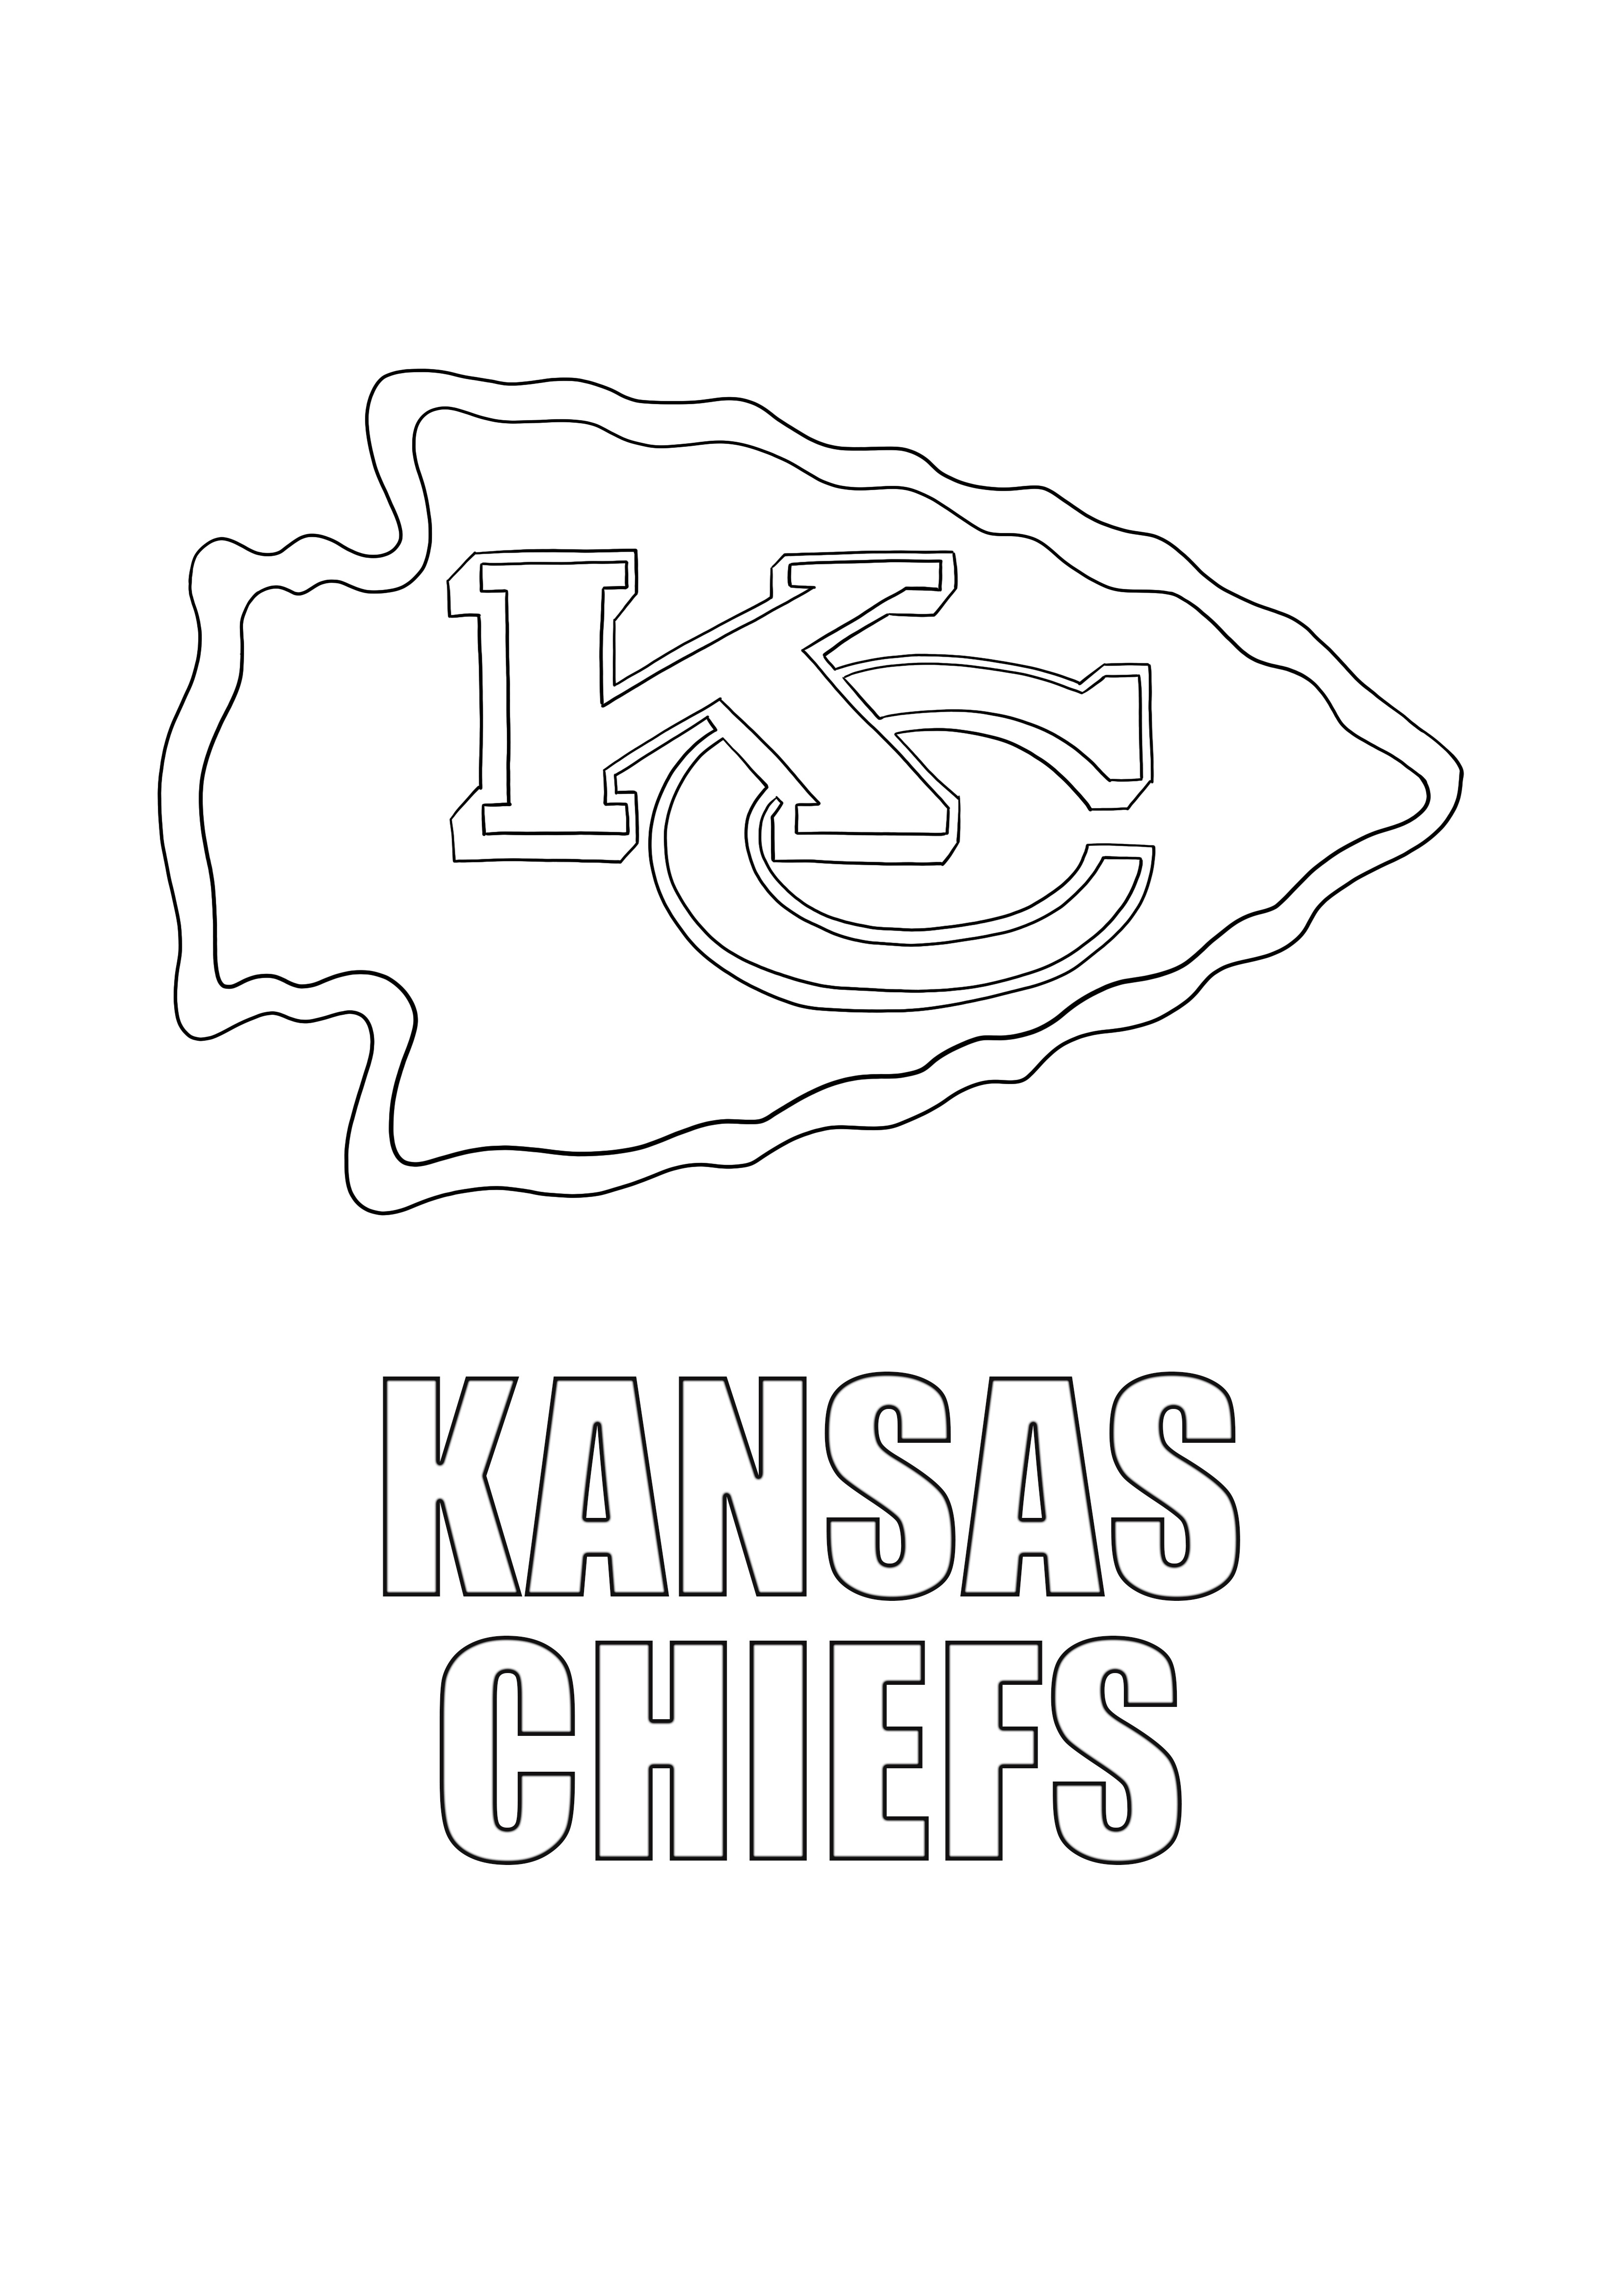 Kansas Chiefs väritys ja ilmainen latausarkki